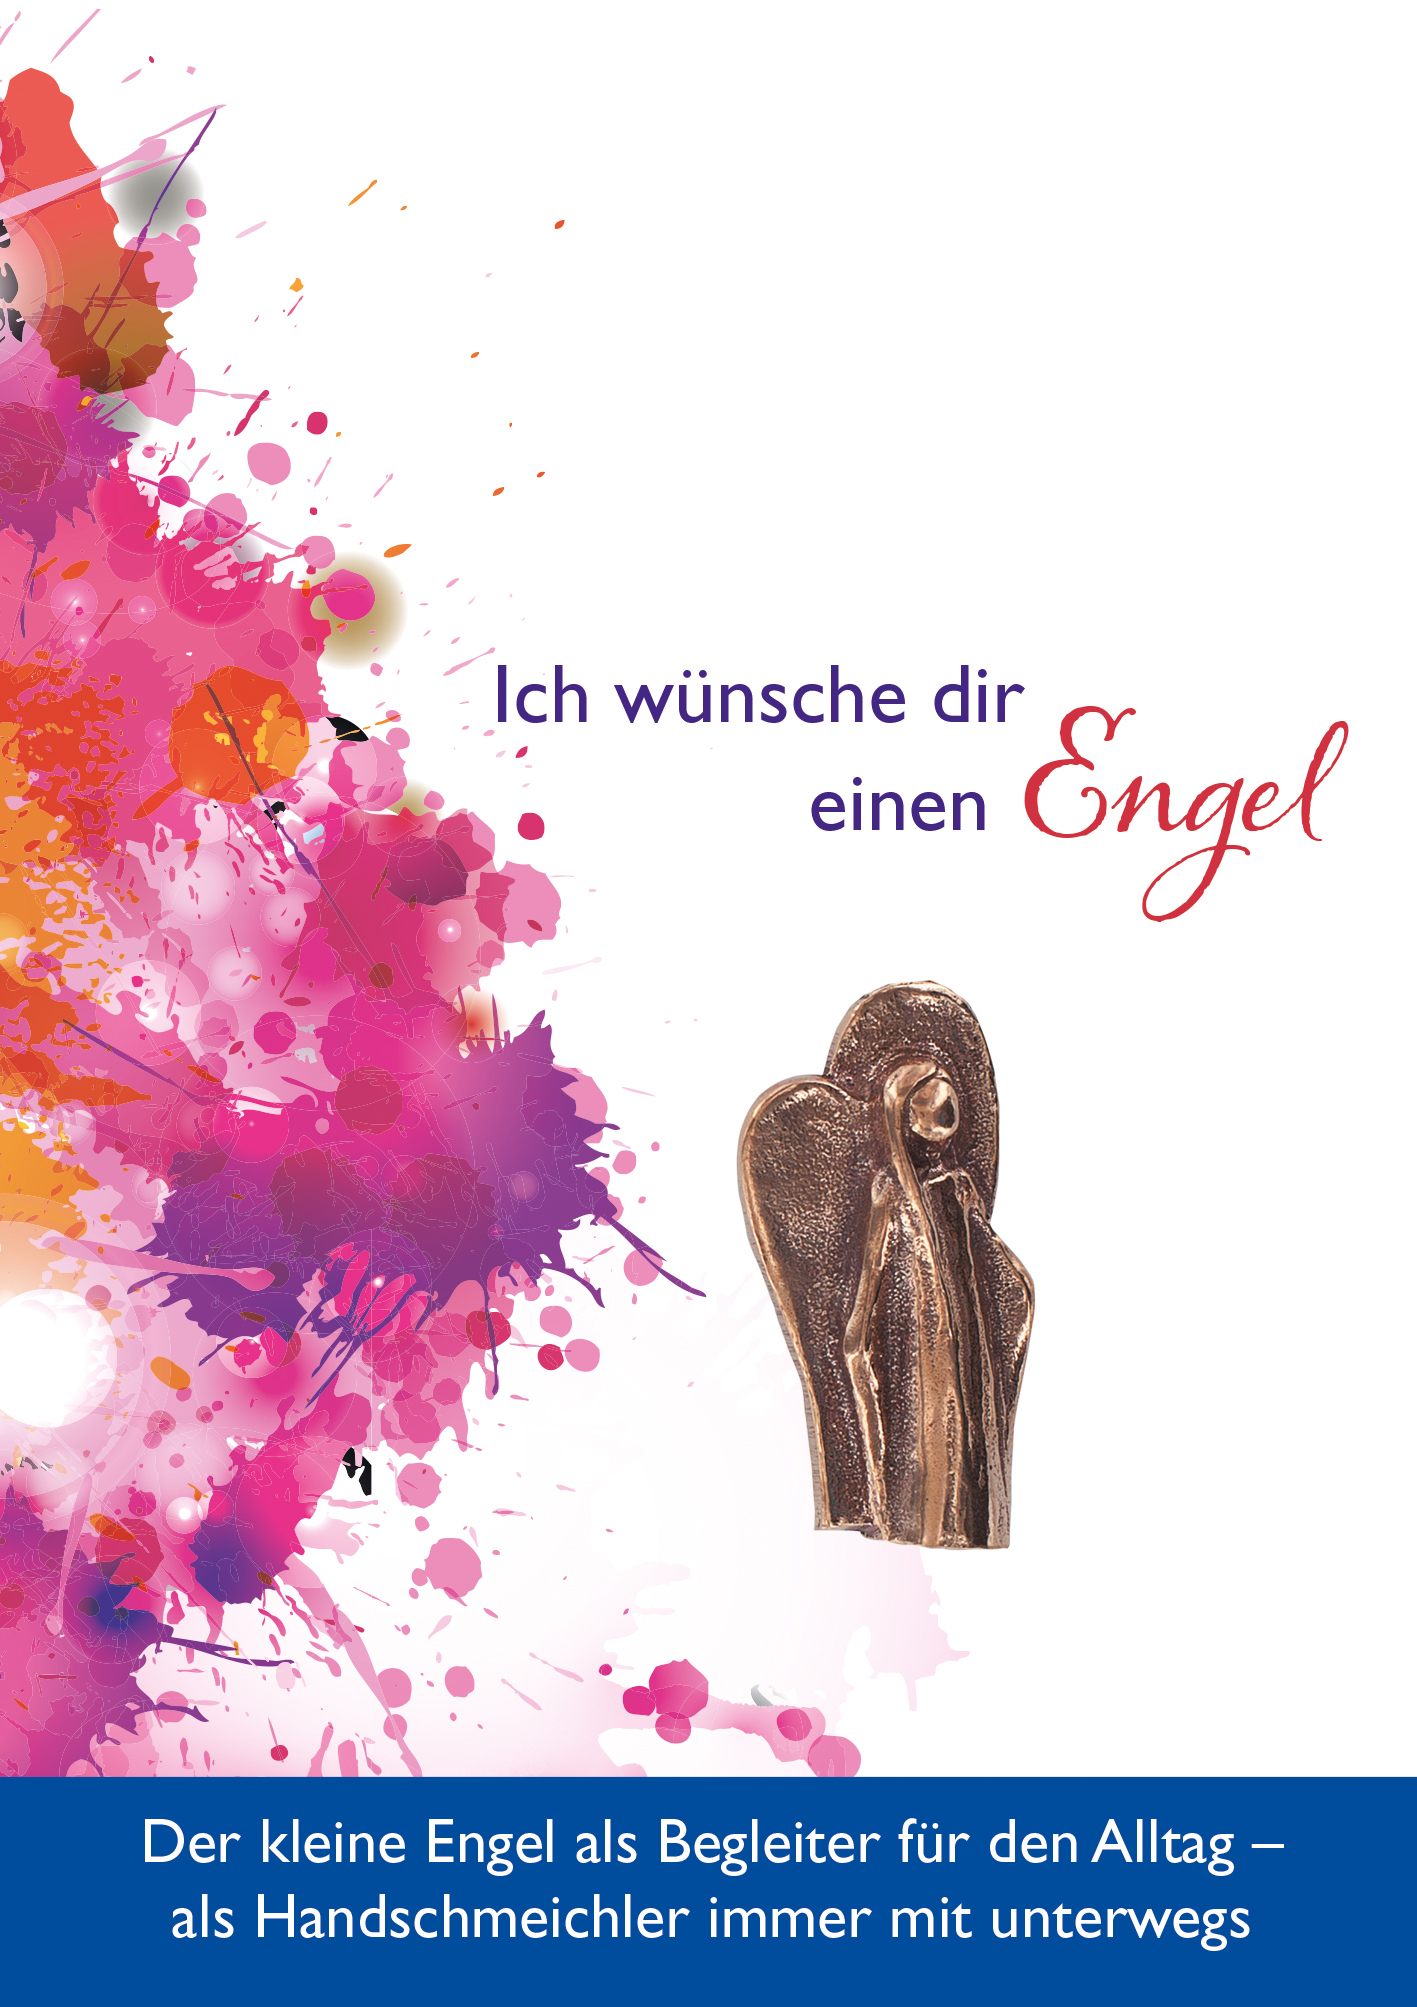 Handschmeichler - Engel & Bronze 